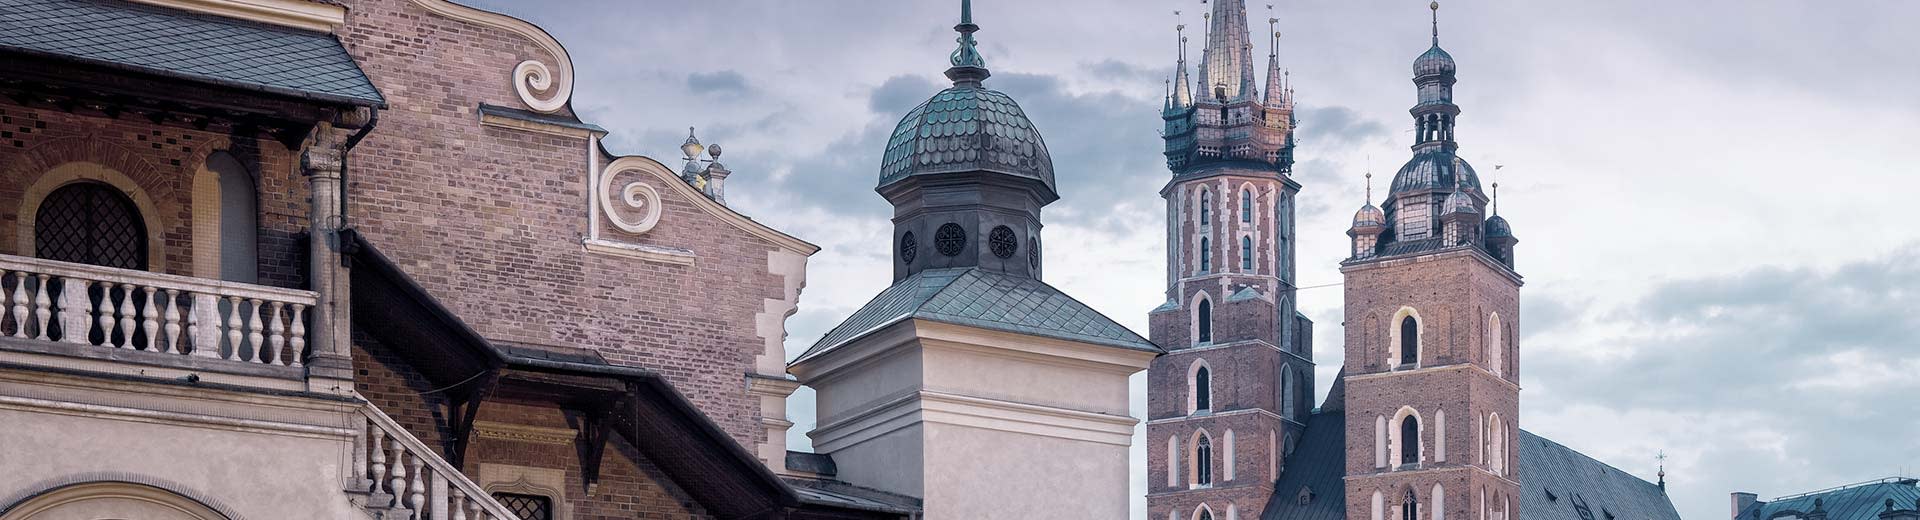 クラクフの曇り空に映える美しいポーランドの教会。